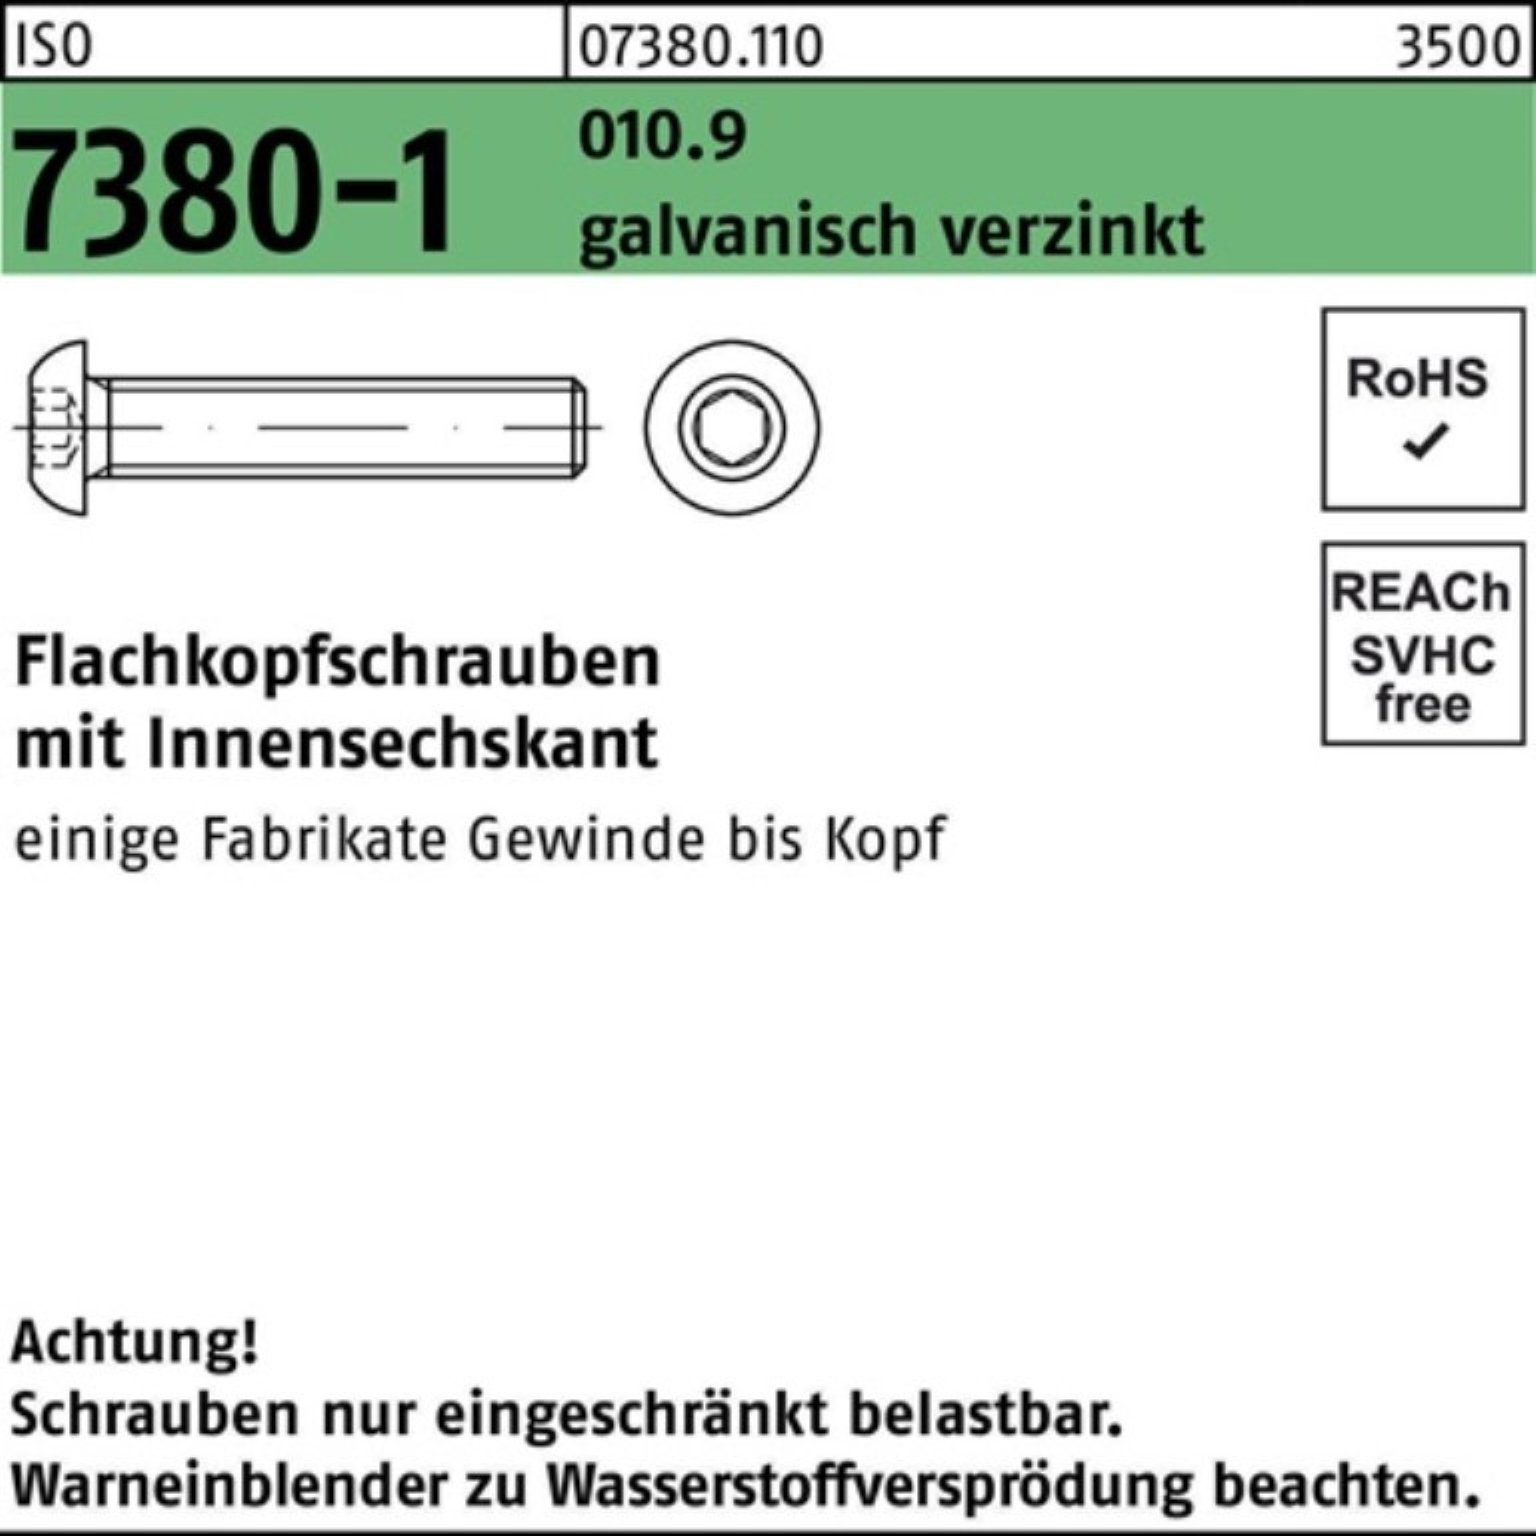 Reyher Schraube 200er Pack Flachkopfschraube 7380-1 010.9 galv.ver M8x14 ISO Innen-6kt